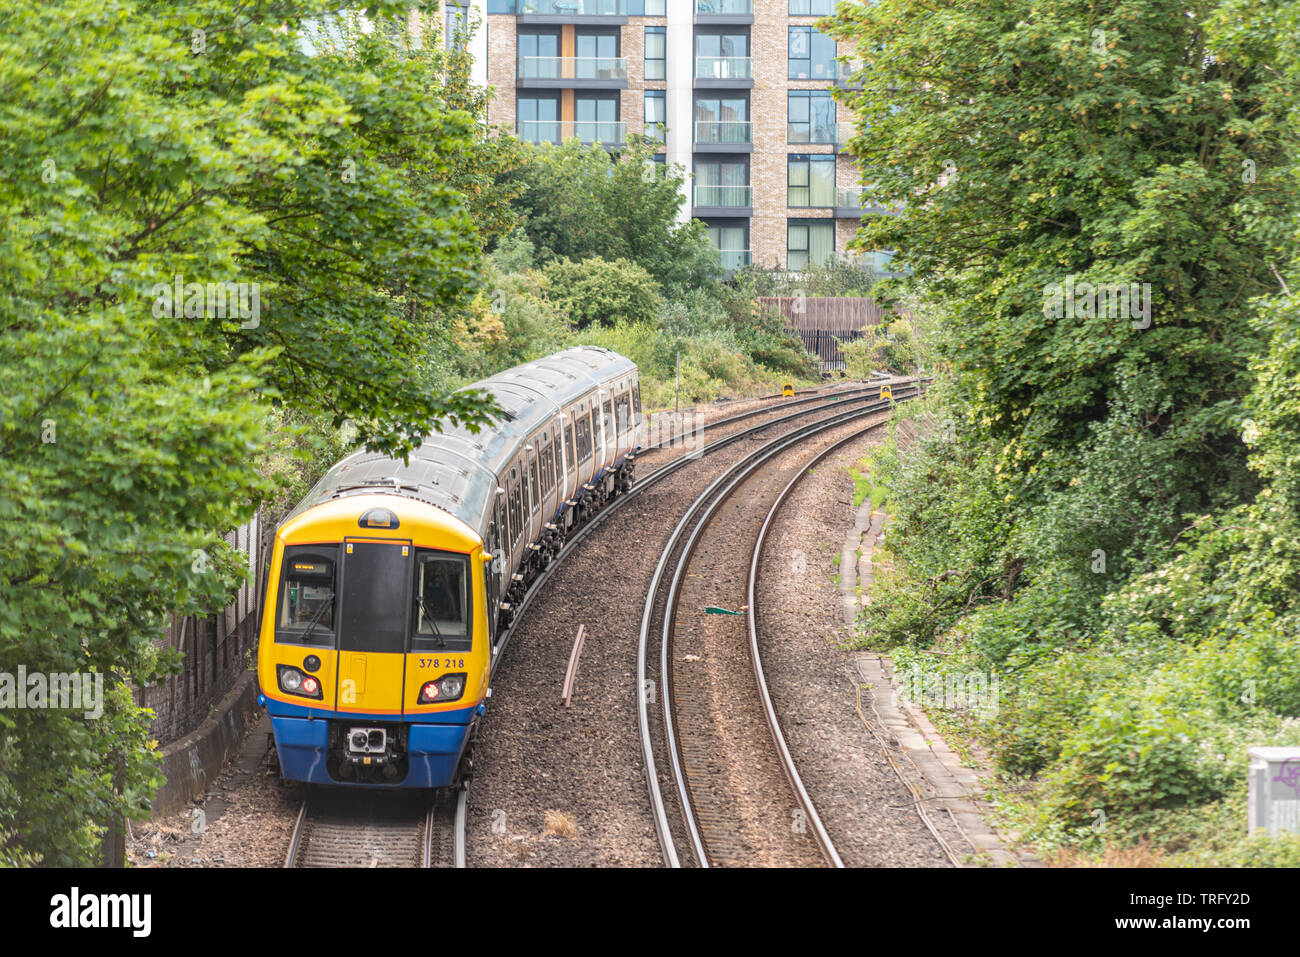 British Rail Class 378 Capitalstar Elektrischer Triebzug Personenzug, der speziell für die London Overground Netzwerk entwickelt, in Chelsea, Großbritannien Stockfoto